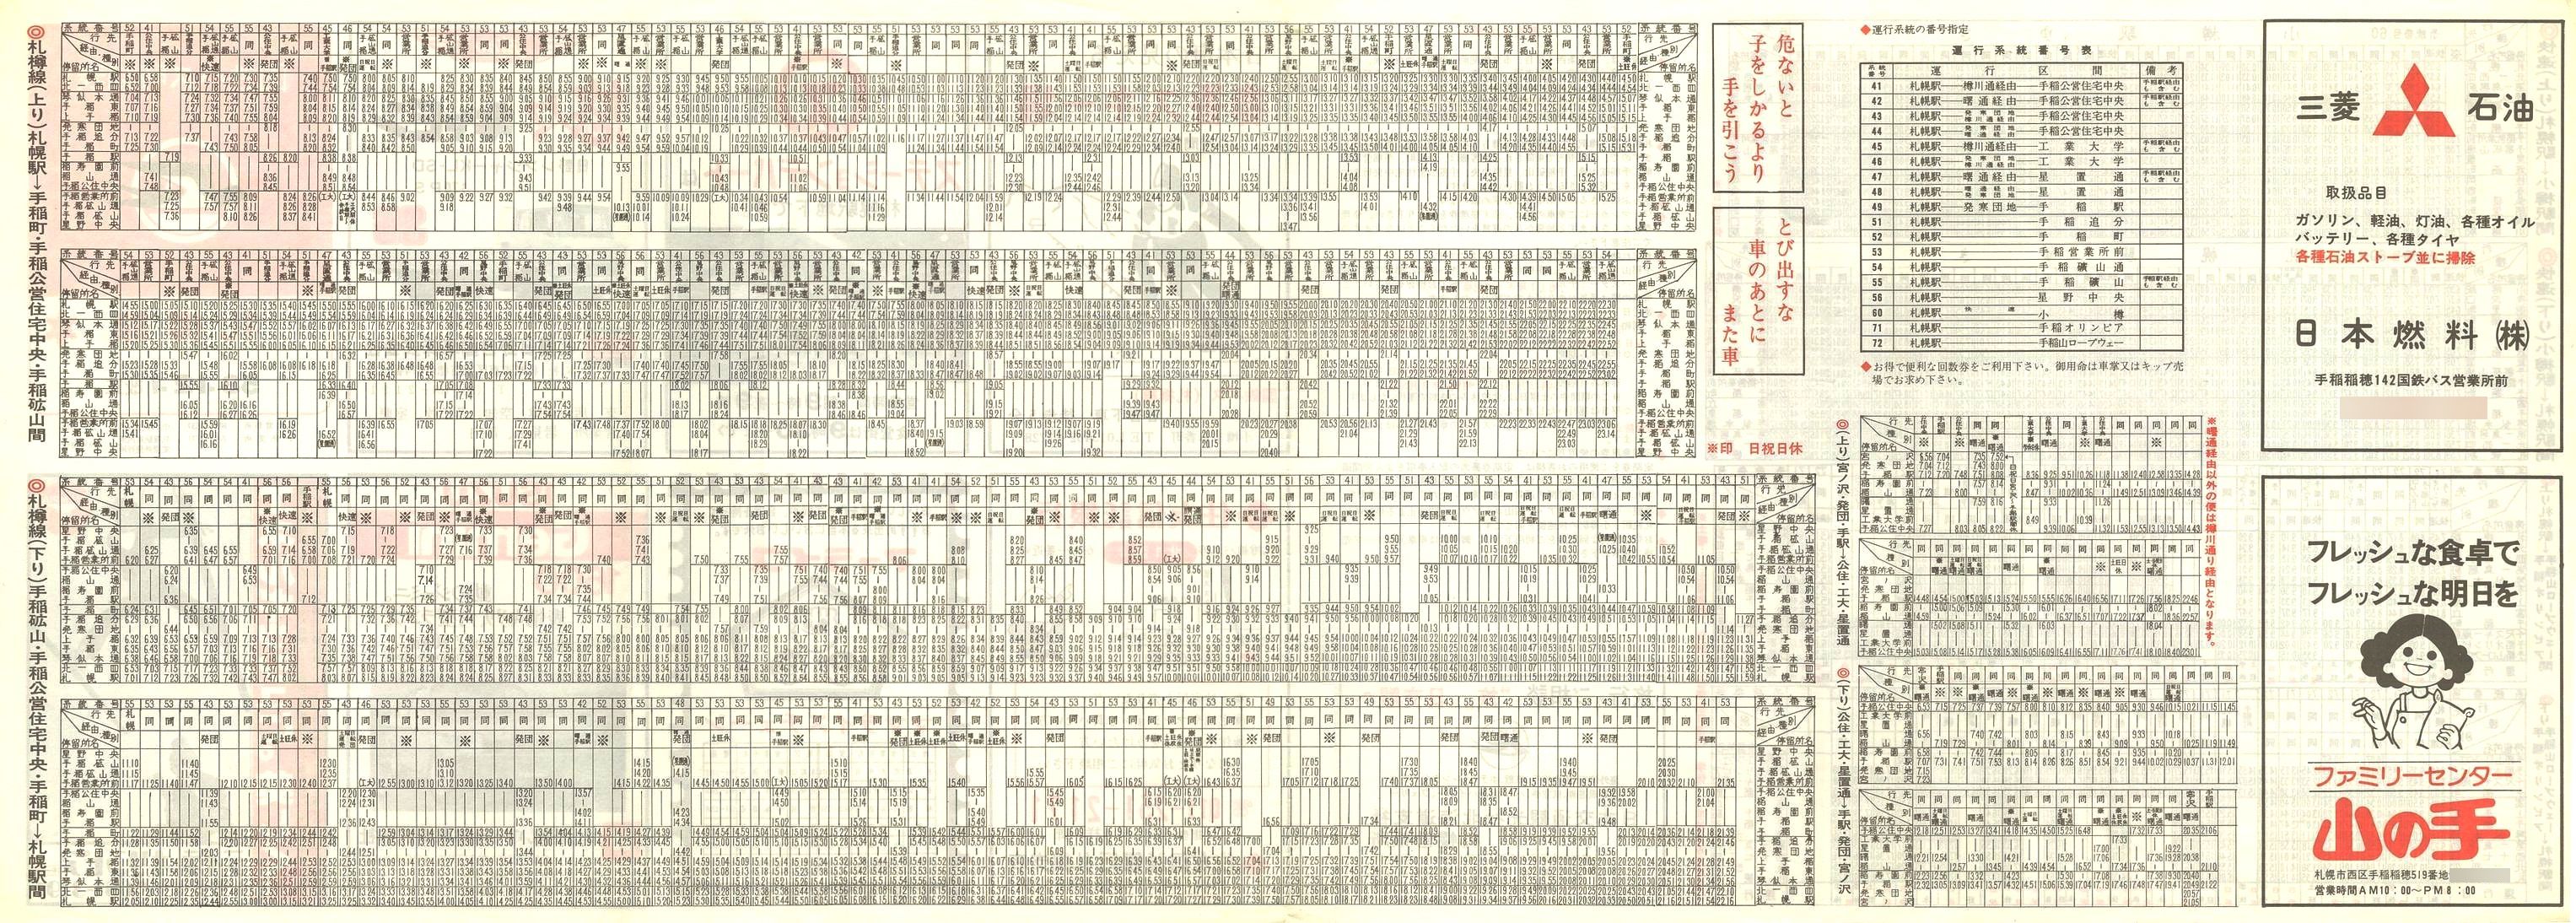 1978-12-01改正_国鉄バス_札樽線時刻表裏面